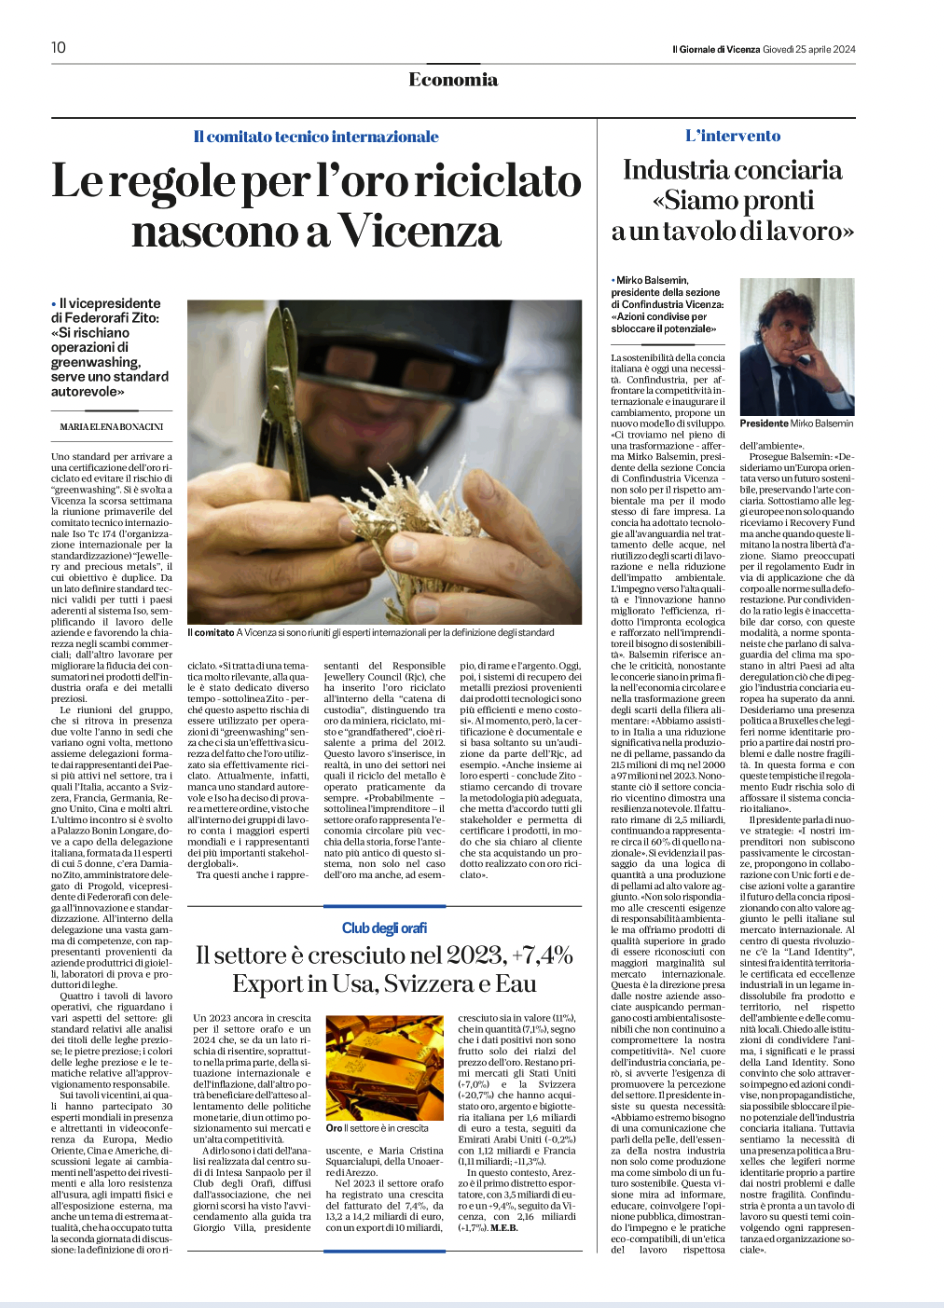 Distretto Veneto Della Pelle Intervista Gdv Mirko Balsemin Presidente Sezione Concia Confindustria Vicenza 2